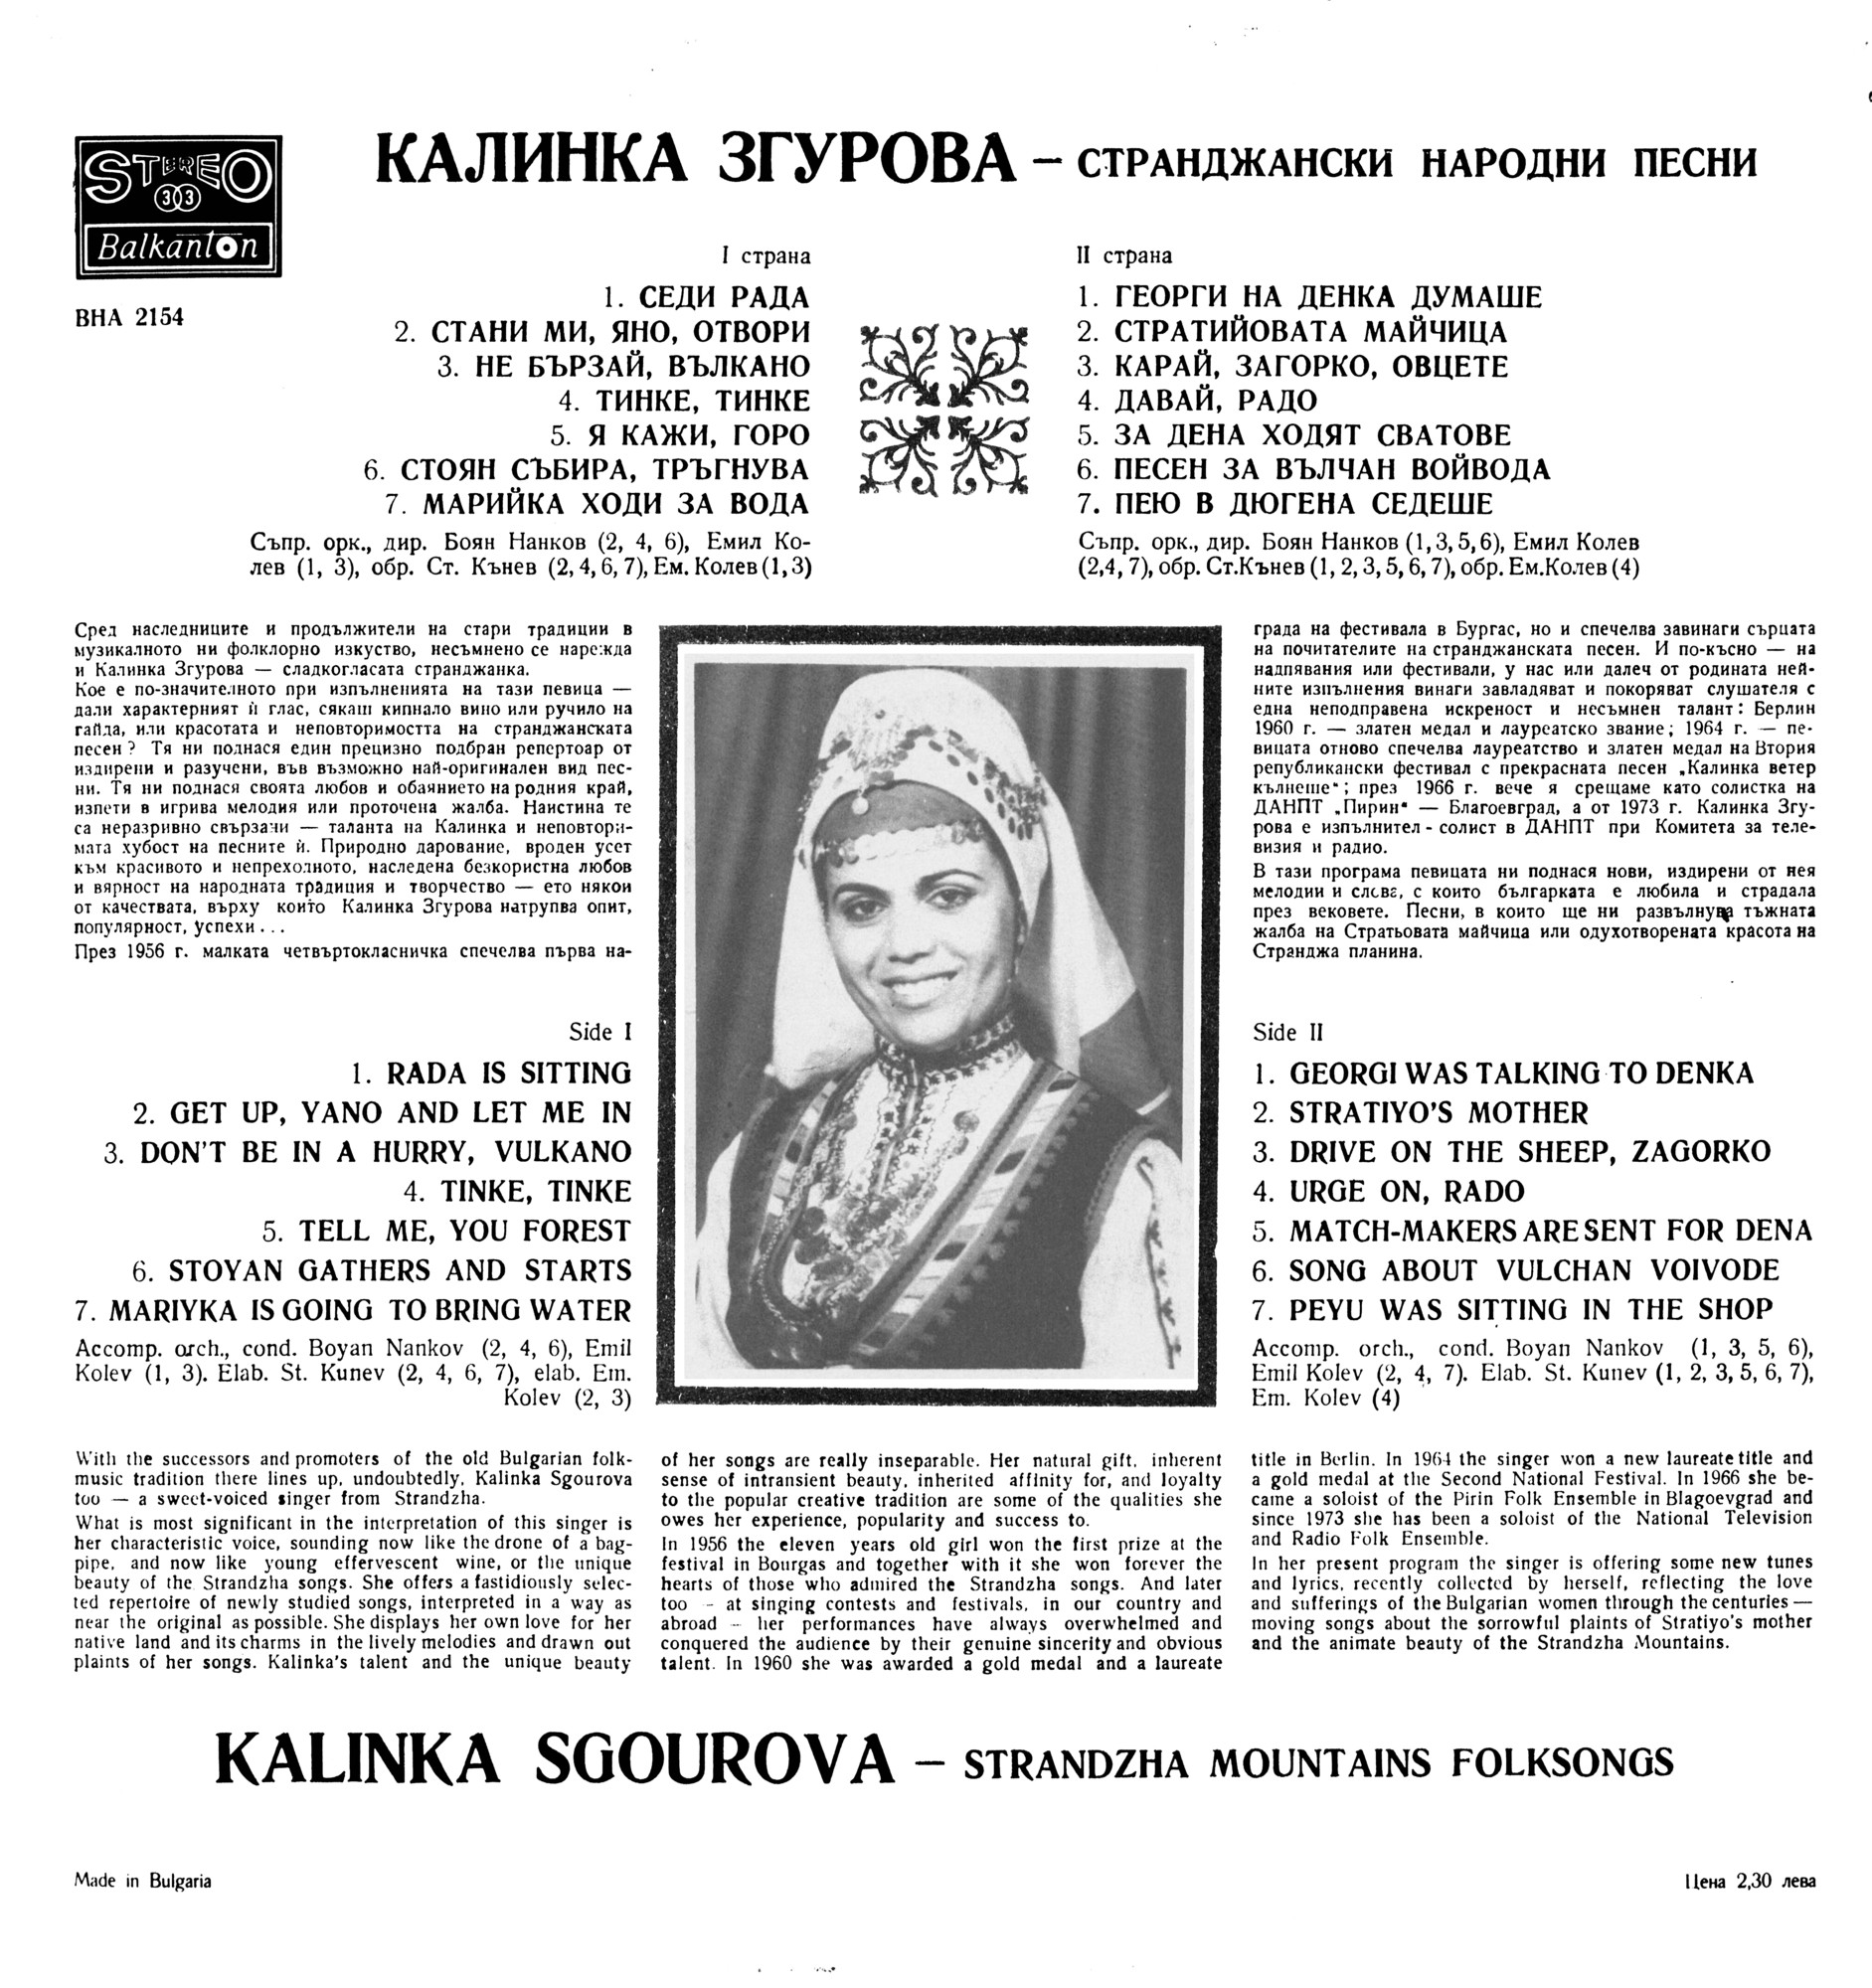 Странджански народни песни изпълнява Калинка Згурова